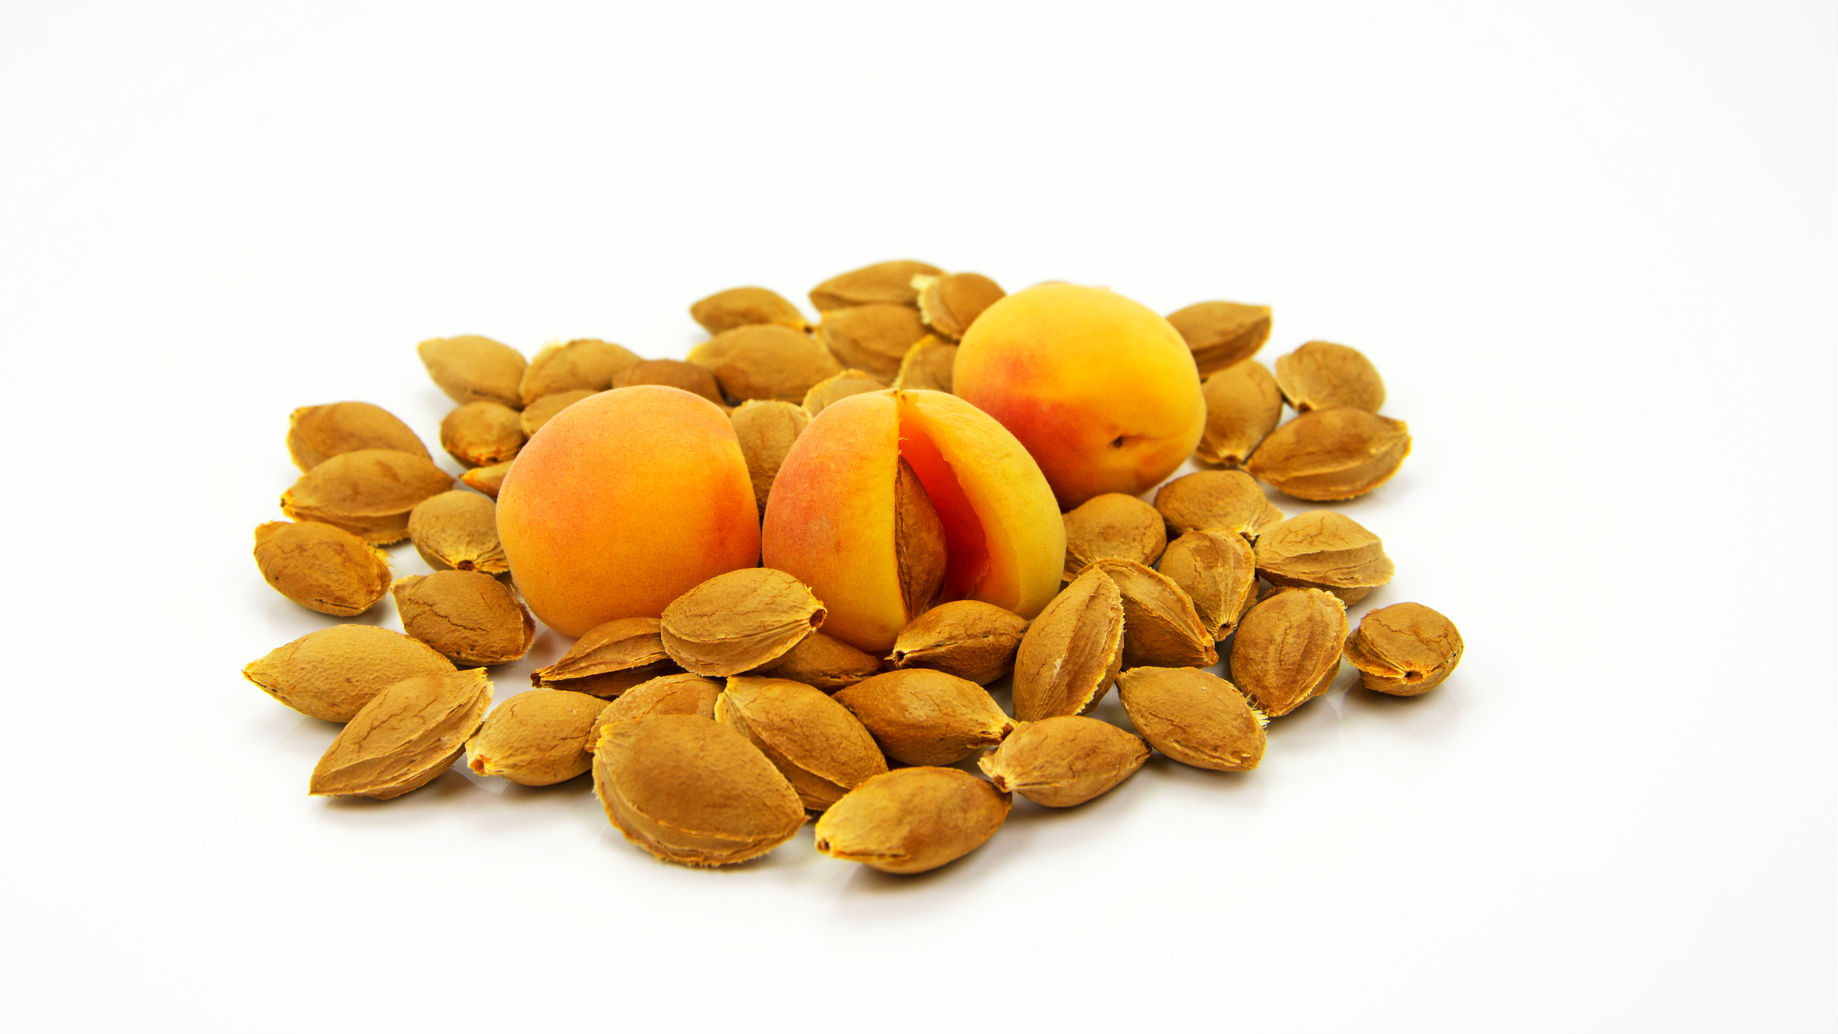 Zuviel des Guten: Mann erleidet Vergiftung nach Einnahme von Aprikosenkern-Extrakt